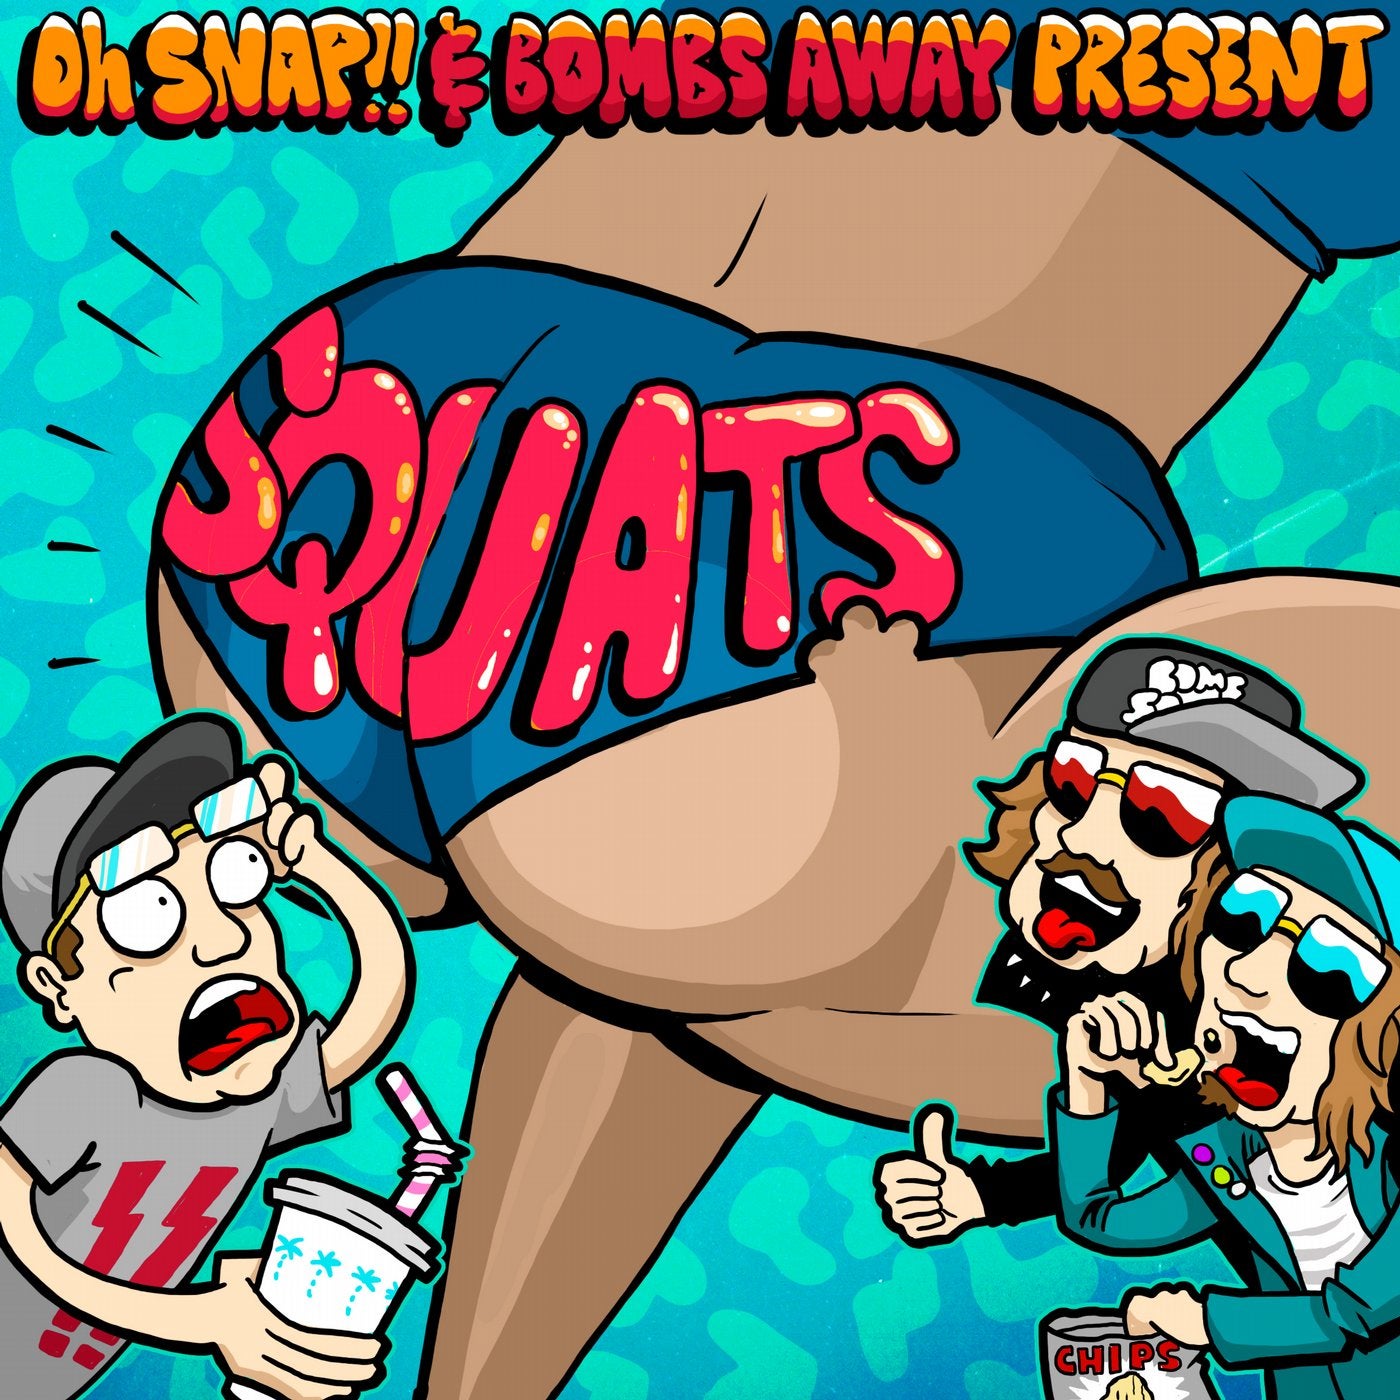 Squats (Remixes Part 1)